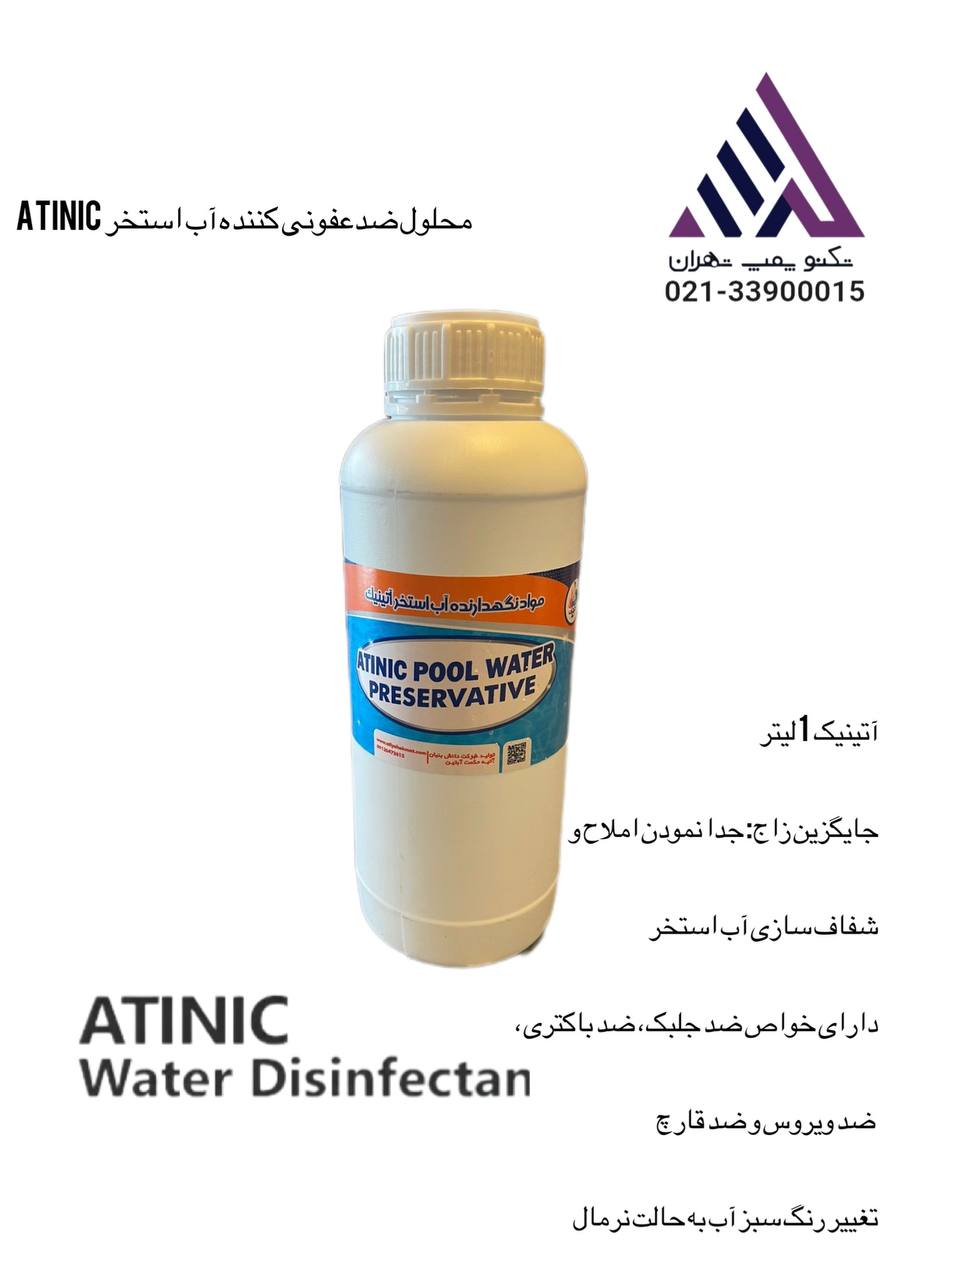 محلول ضدعفونی کننده آب استخر آتینیک  1 لیتر (Atinic)